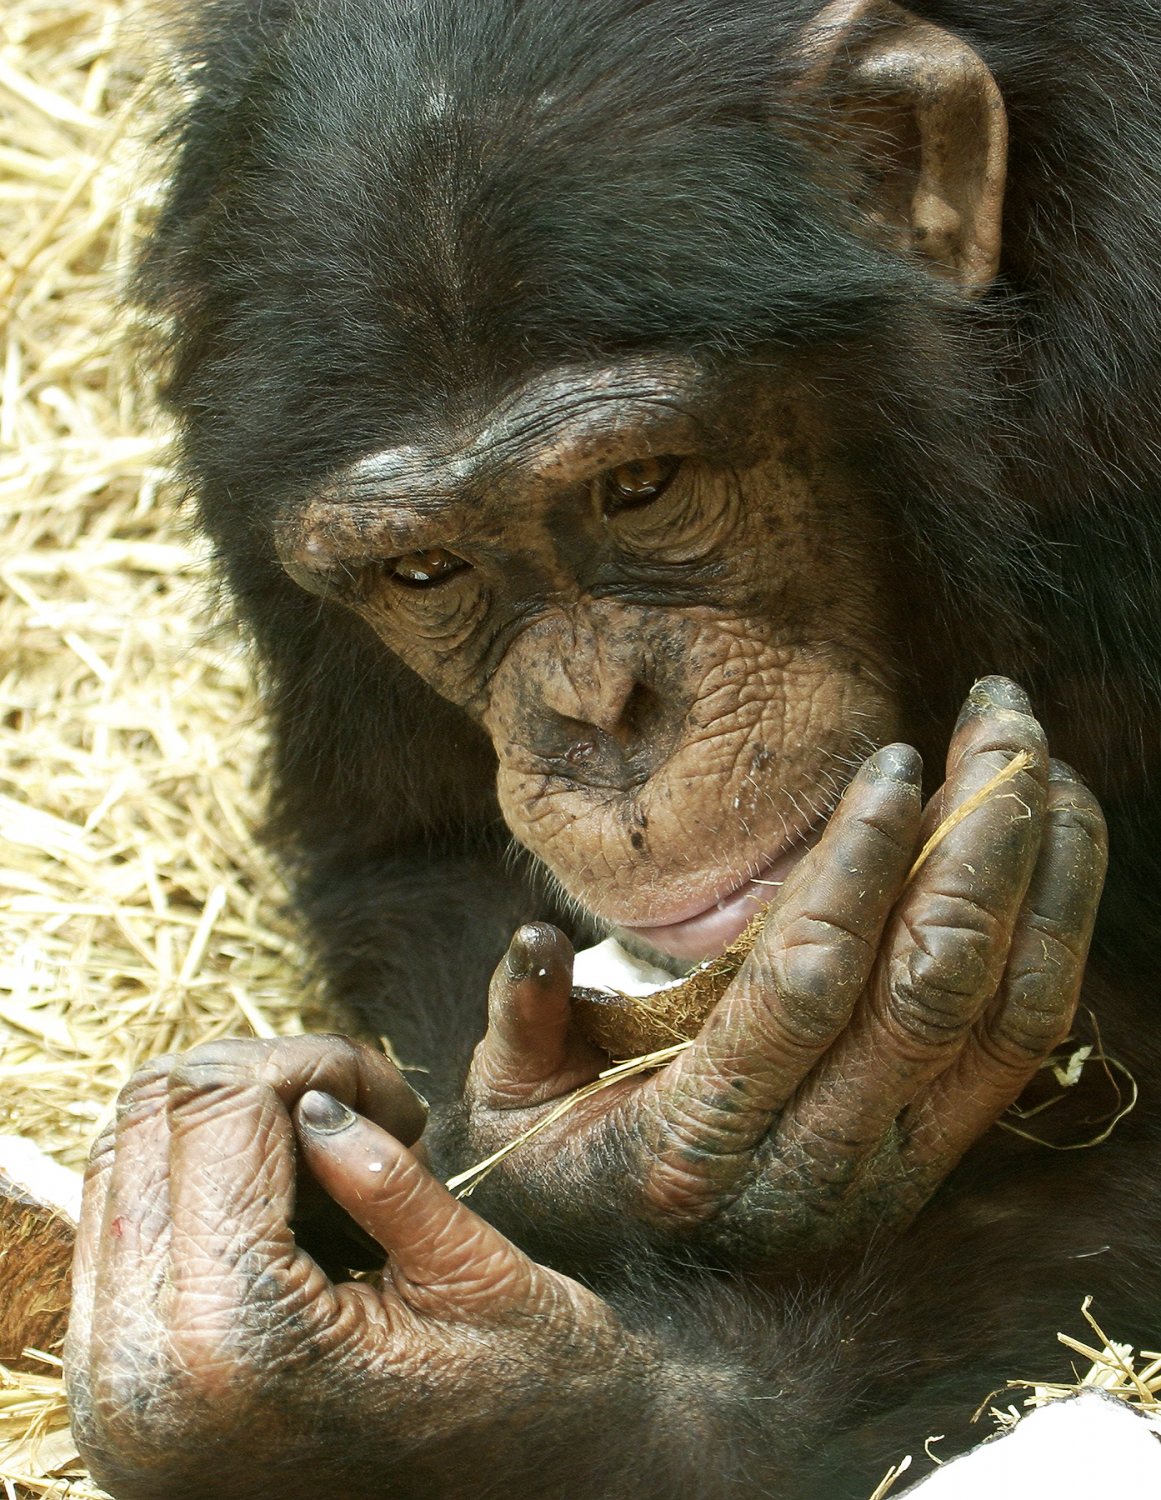 Chimpanzee.jpg